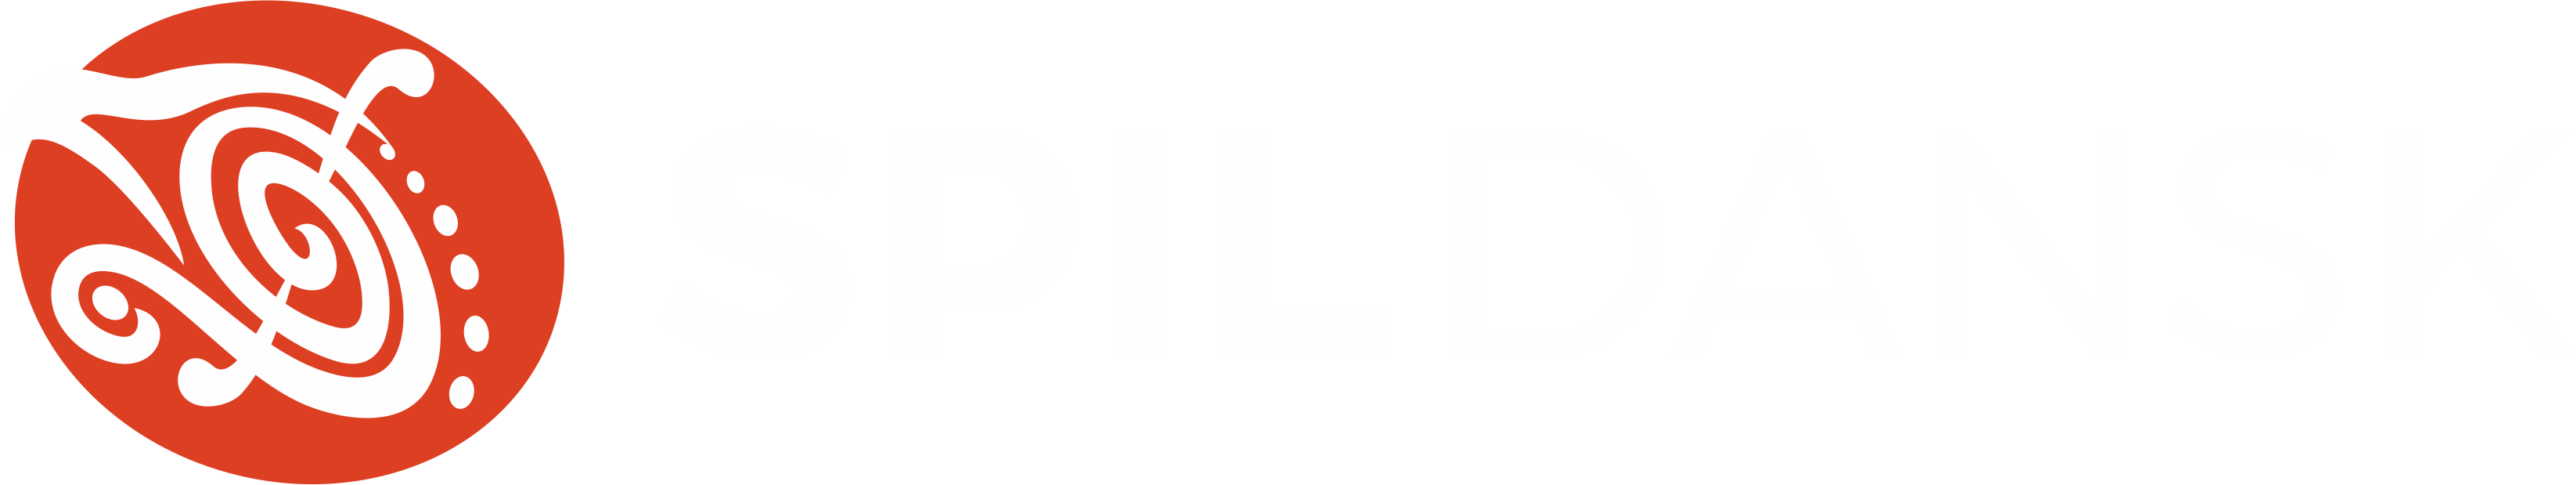 SPIL DANSK logo 2021 neg